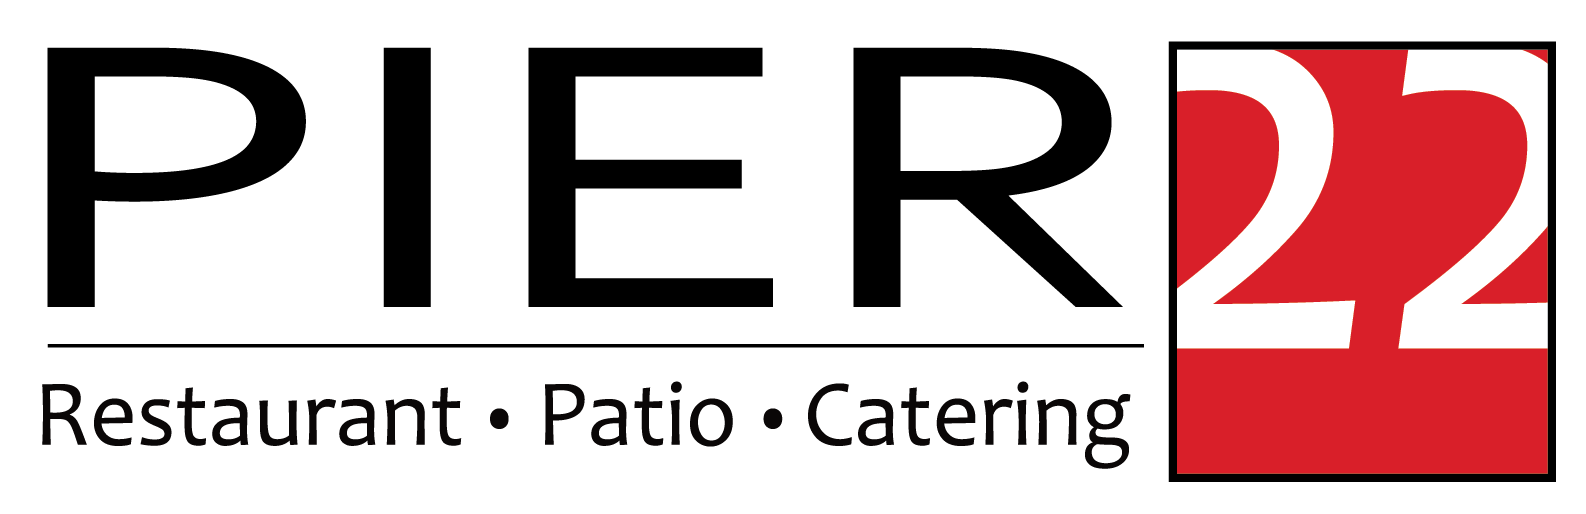 Pier 22 logo, restaurant, patio, catering